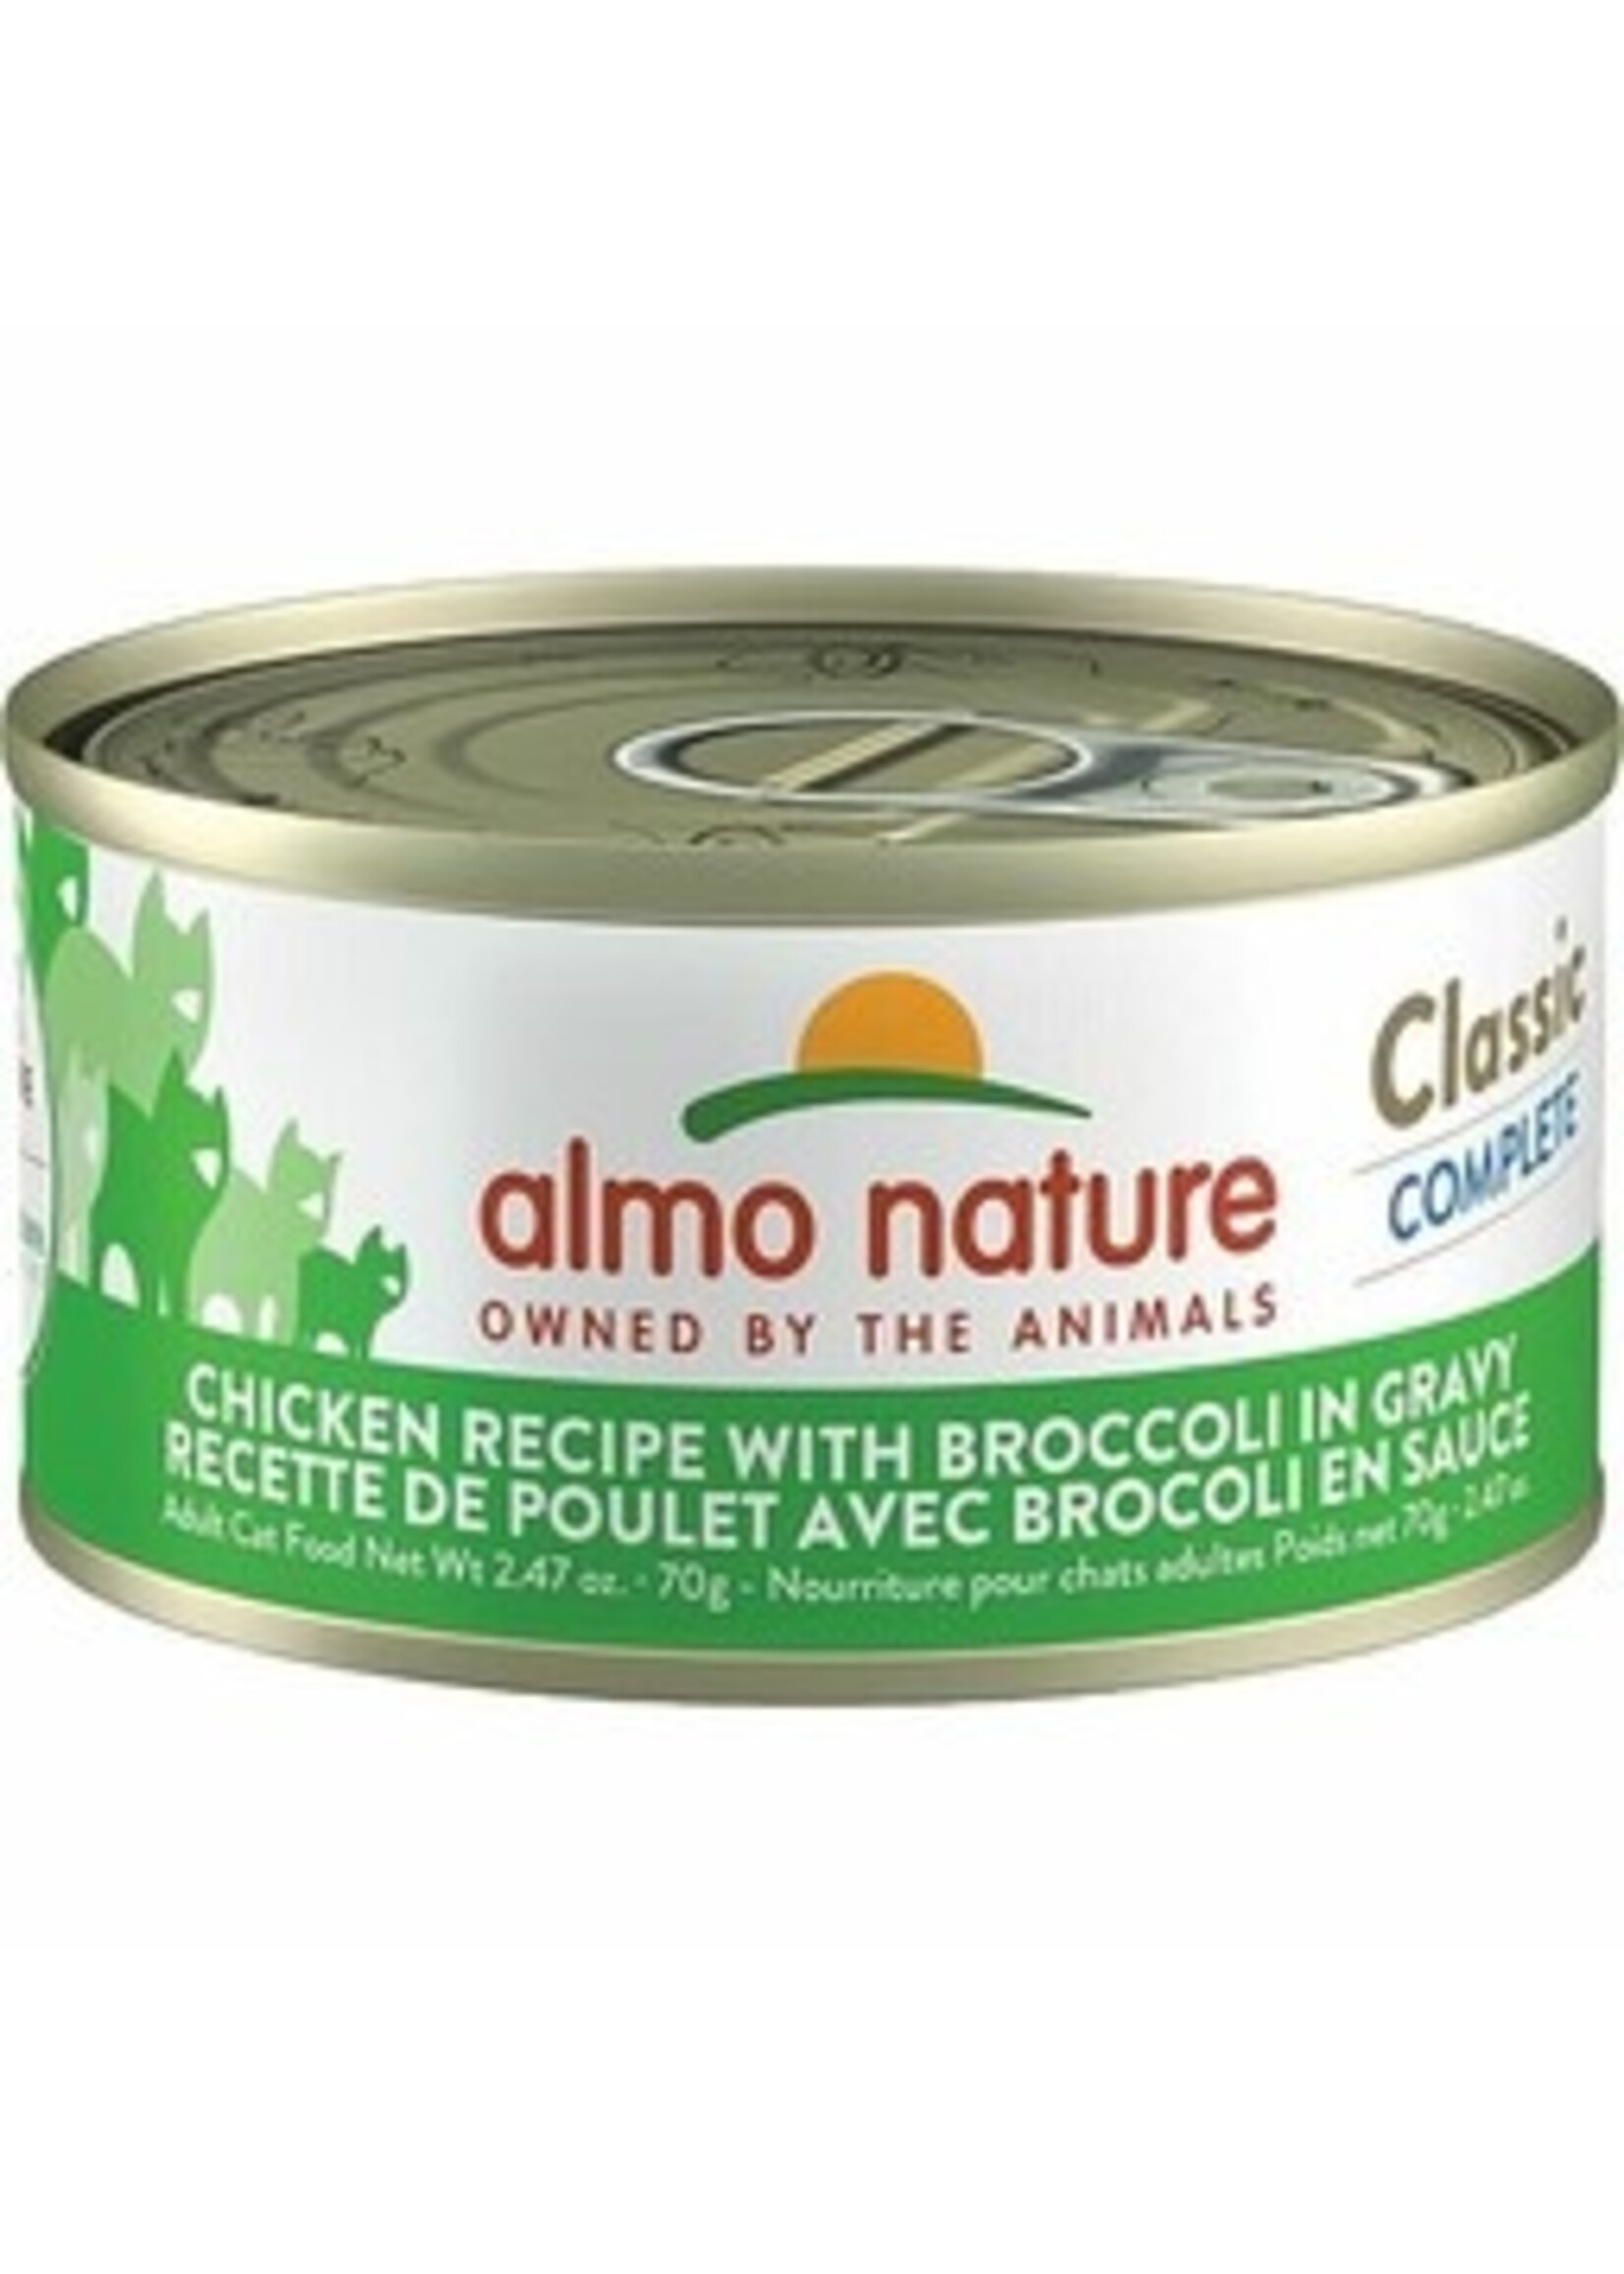 almo Nature almo nature Classic Complete Chicken Recipe w/ Broccoli in Gravy 70gm single